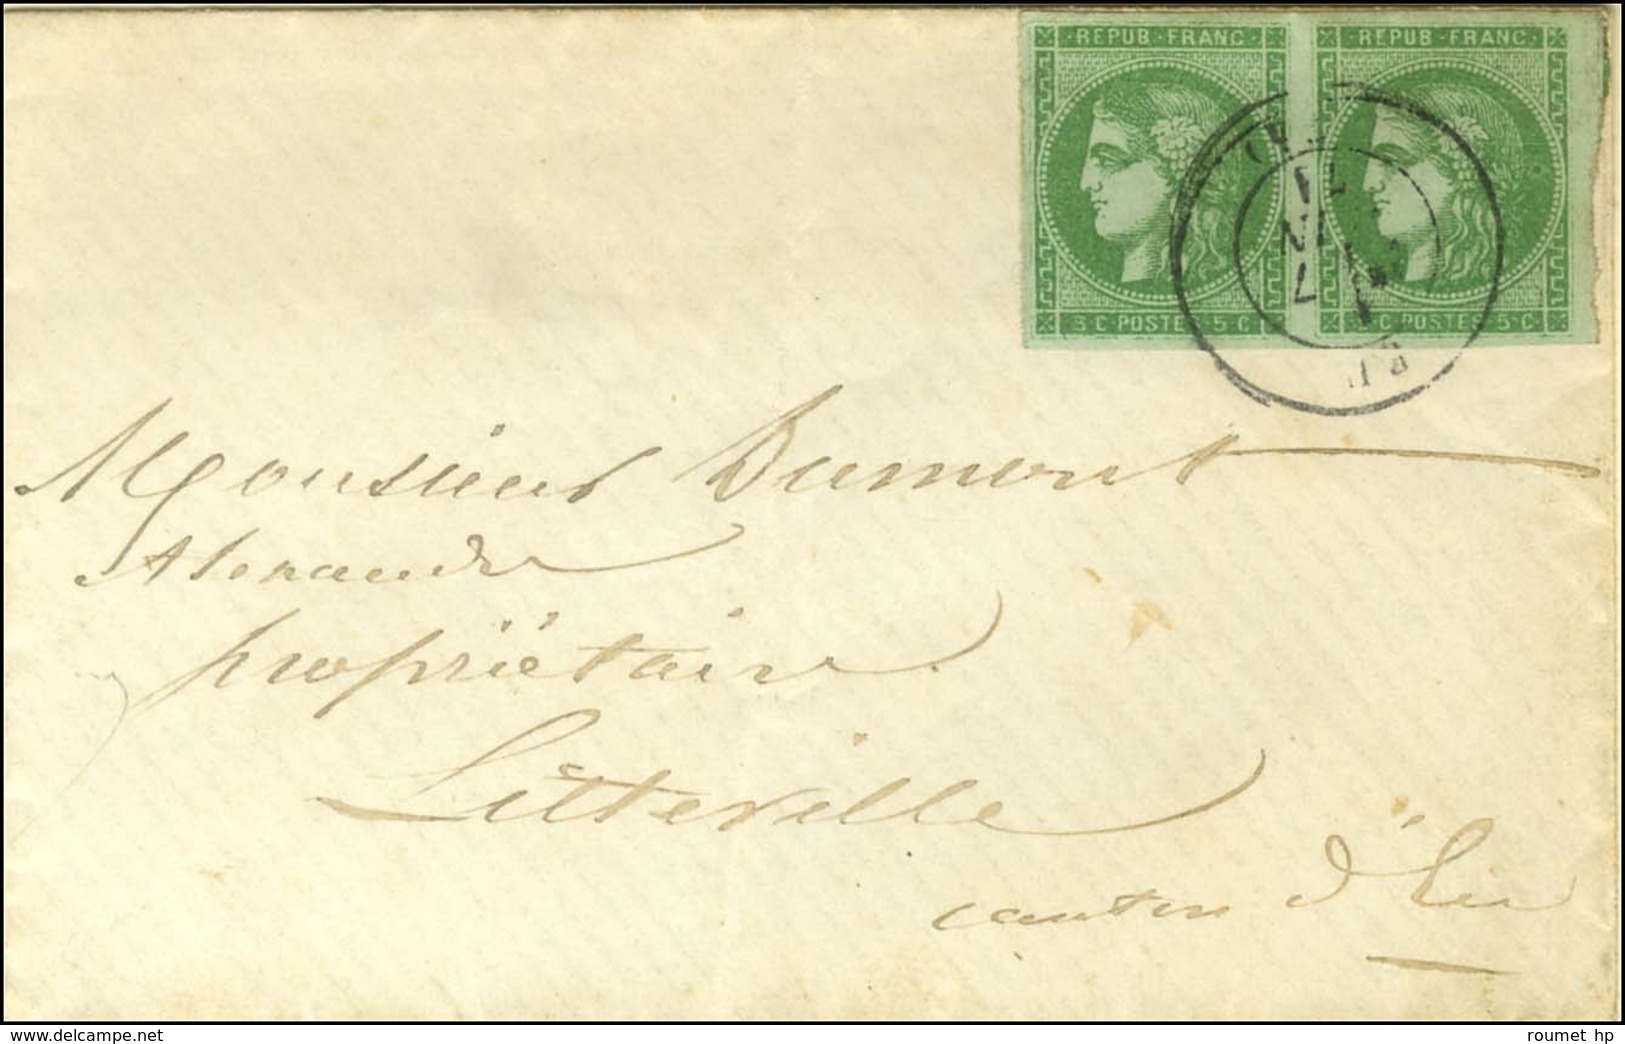 Càd EU (74) / N° 42 Paire, Belles Marges Sur Enveloppe Carte De Visite Pour Litteville. 1871. - TB / SUP. - R. - 1870 Emission De Bordeaux